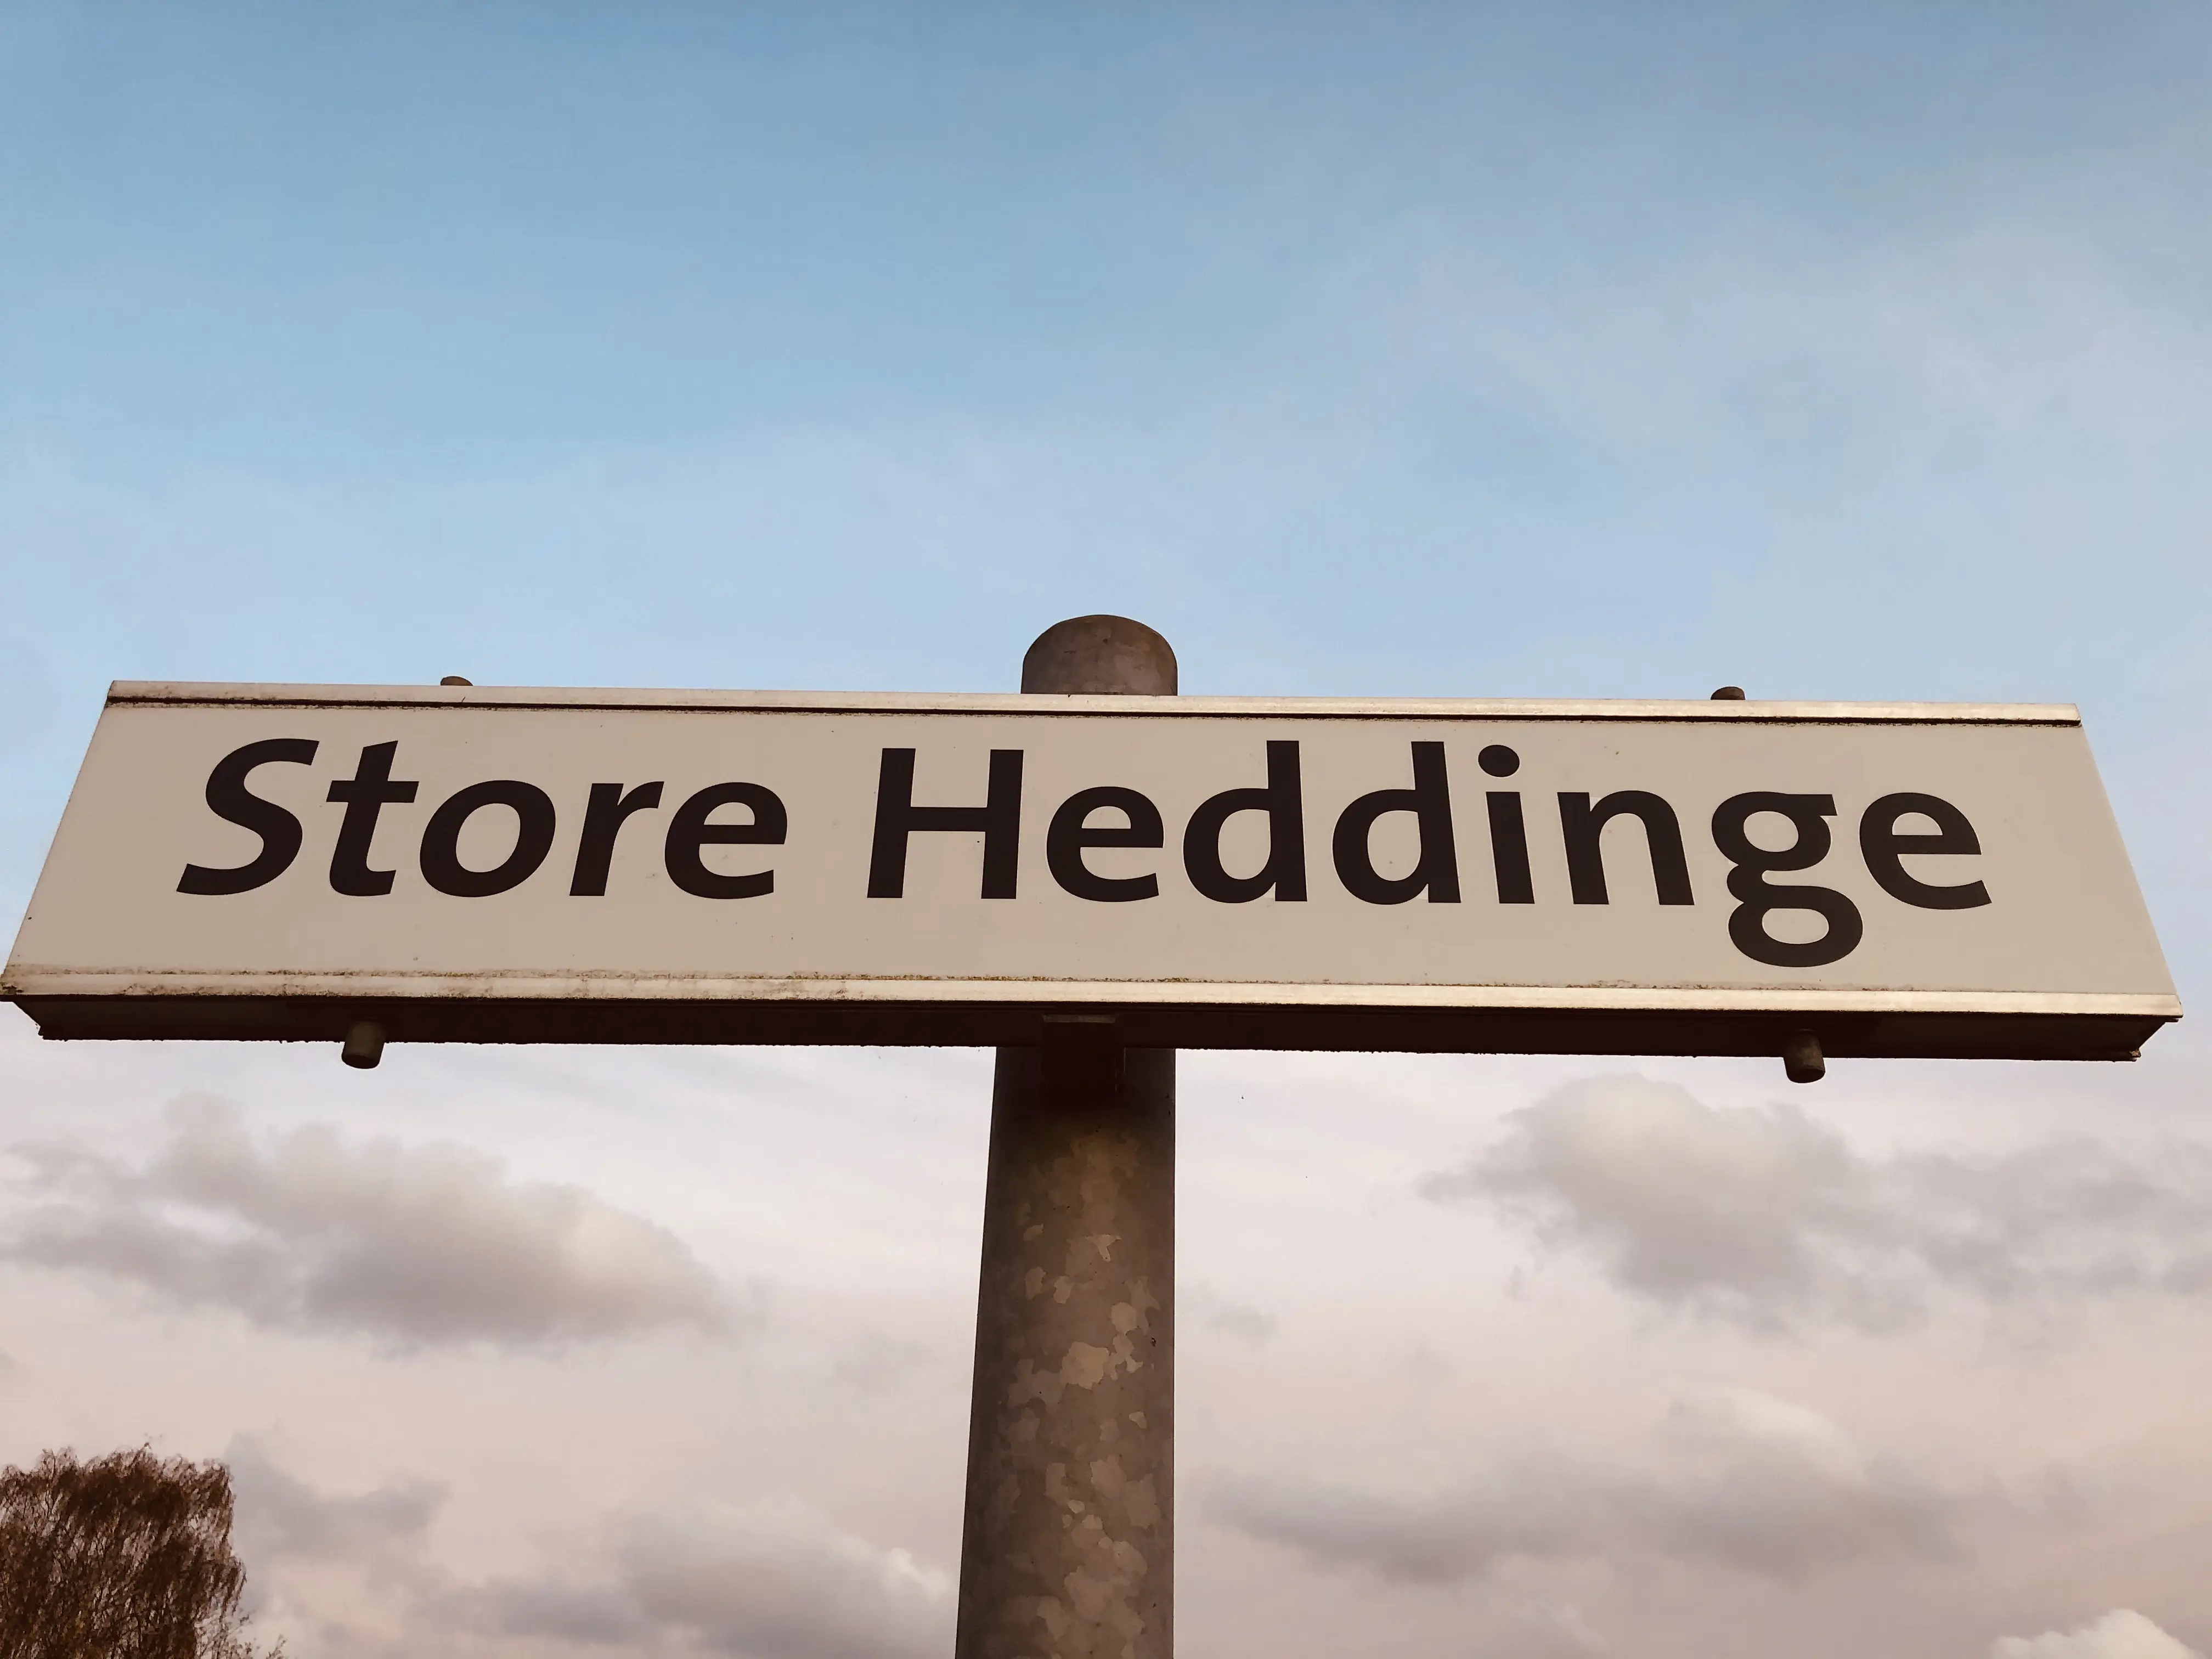 Store Heddinge Station.